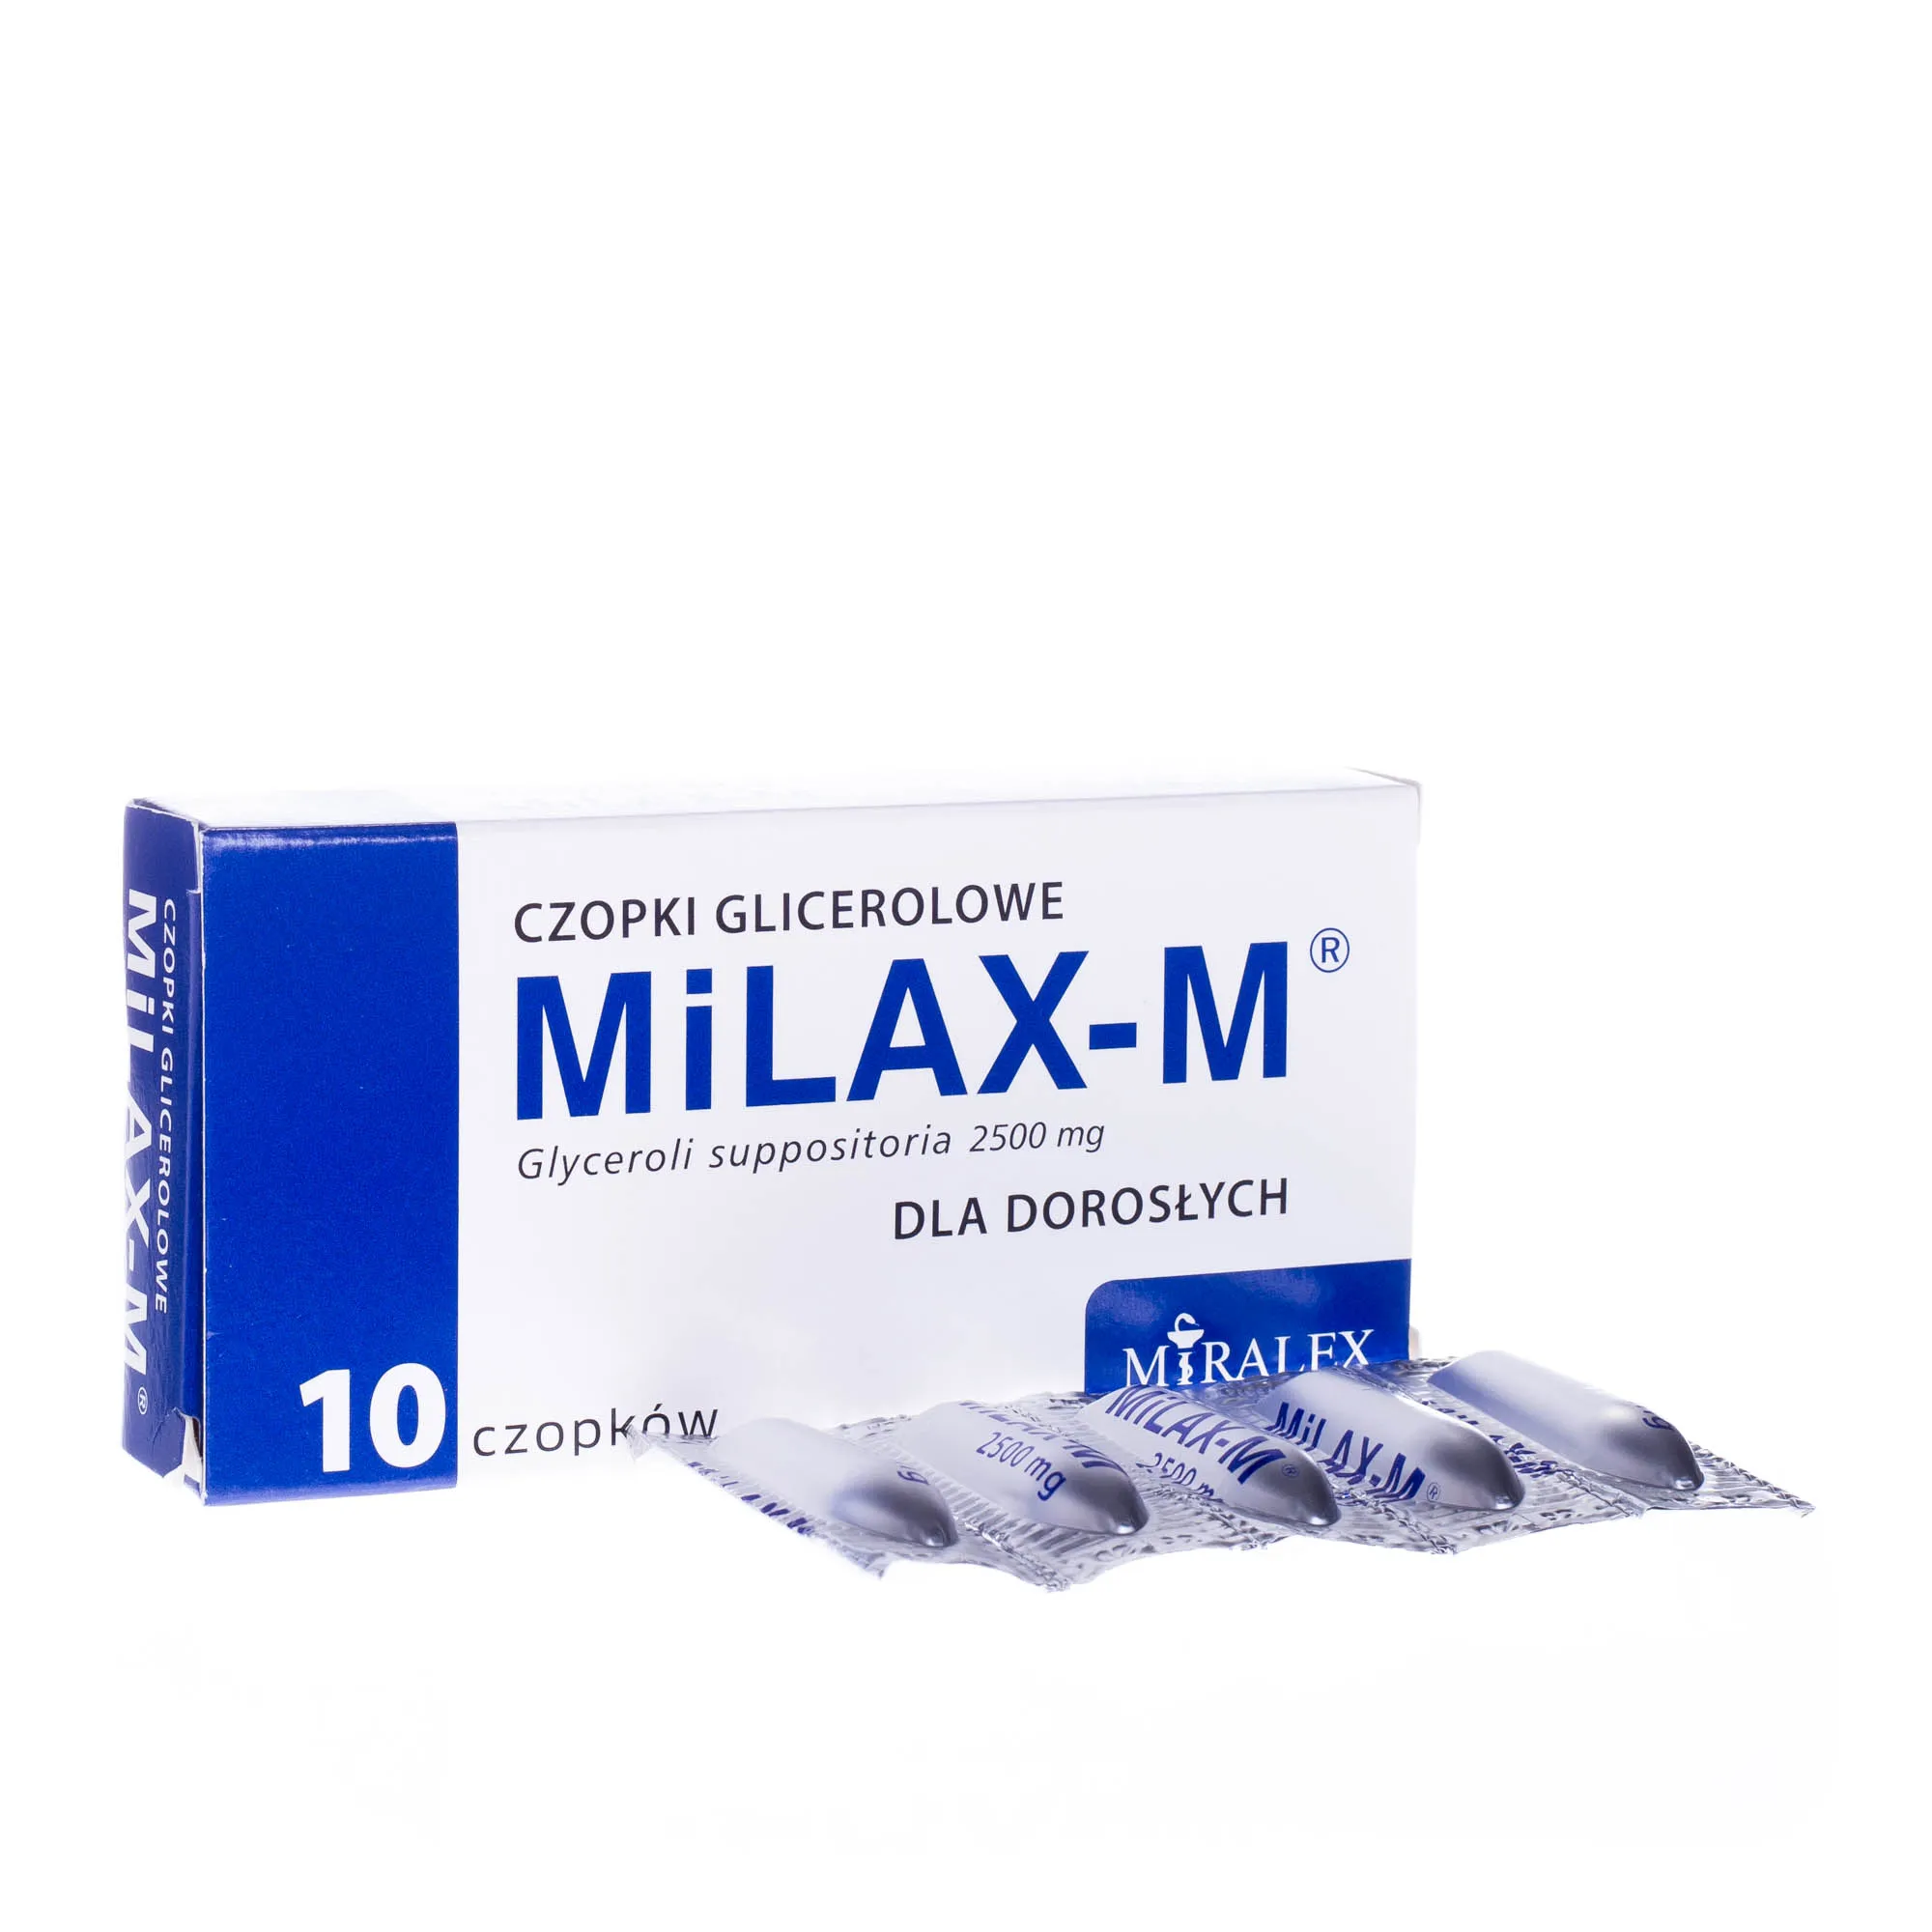 MiLAX-M Czopki glicerolowe dla dorosłych 2,5g, 10 czopków 